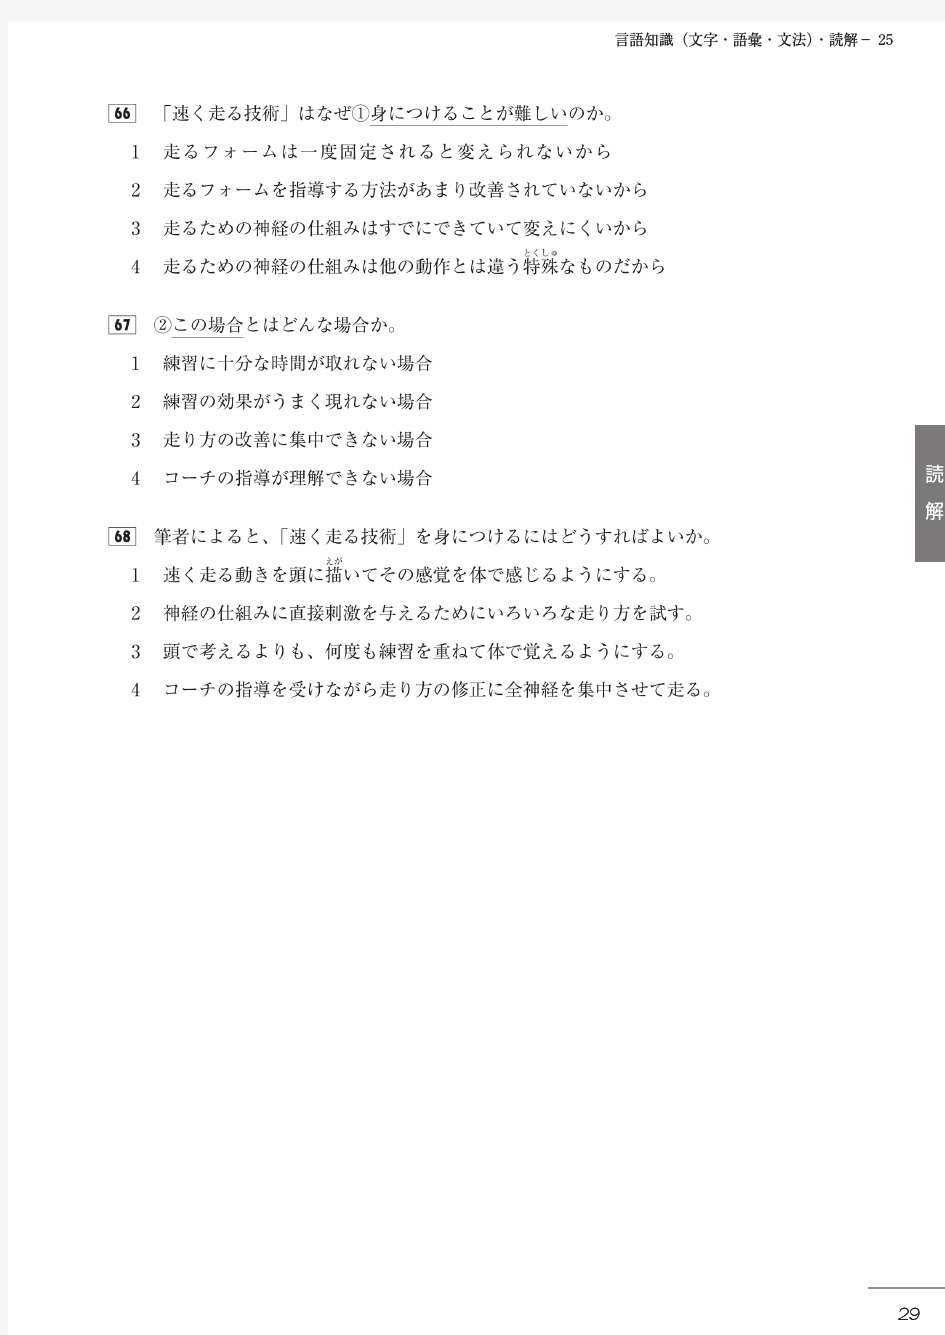 13年7月日本语能力测试N2模拟题(1)下-早道日语